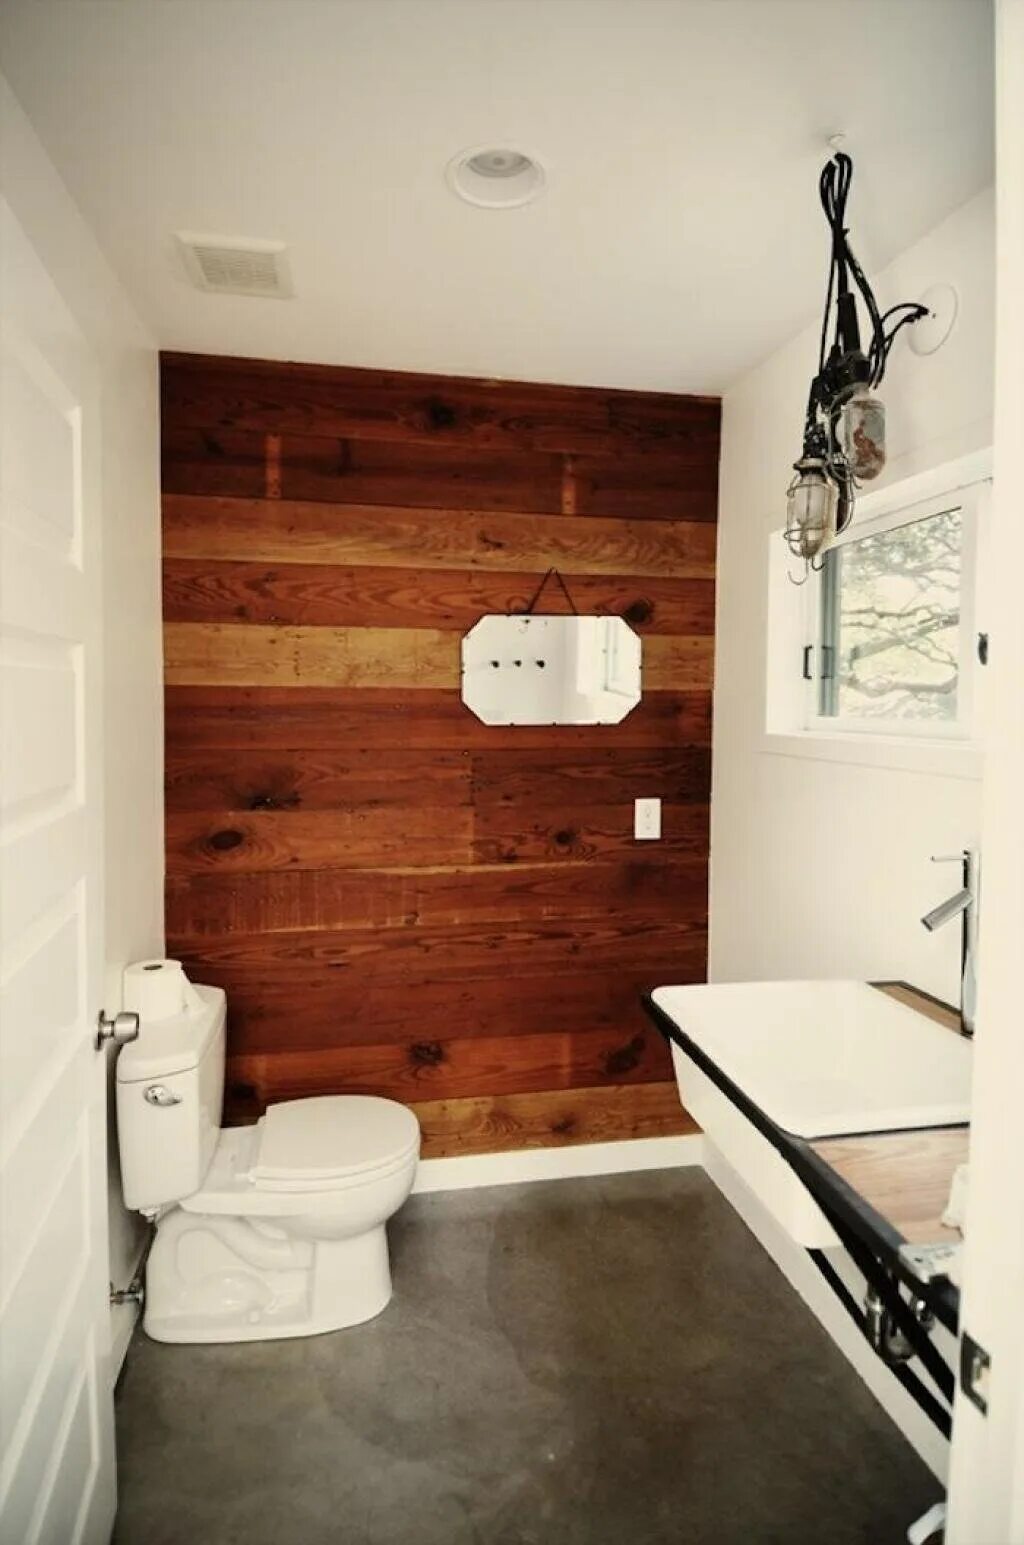 Панели дерево ванной. Отделка ванной под дерево. Санузел с деревянными панелями. Деревянные панели в ванной. Ванная отделанная панелями под дерево.